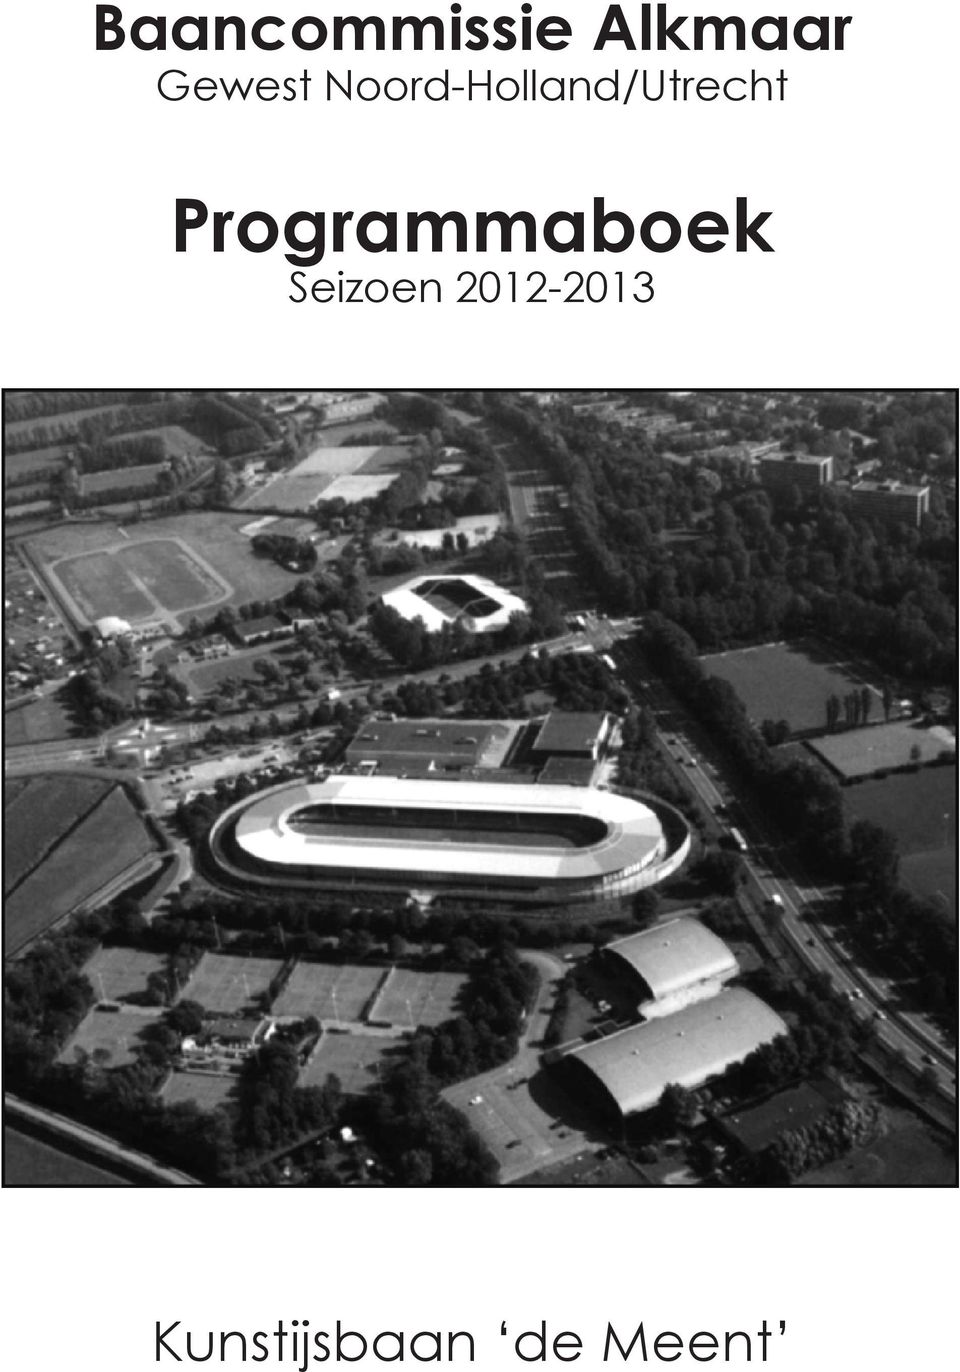 Programmaboek Programmaboek Seizoen 2012-2013